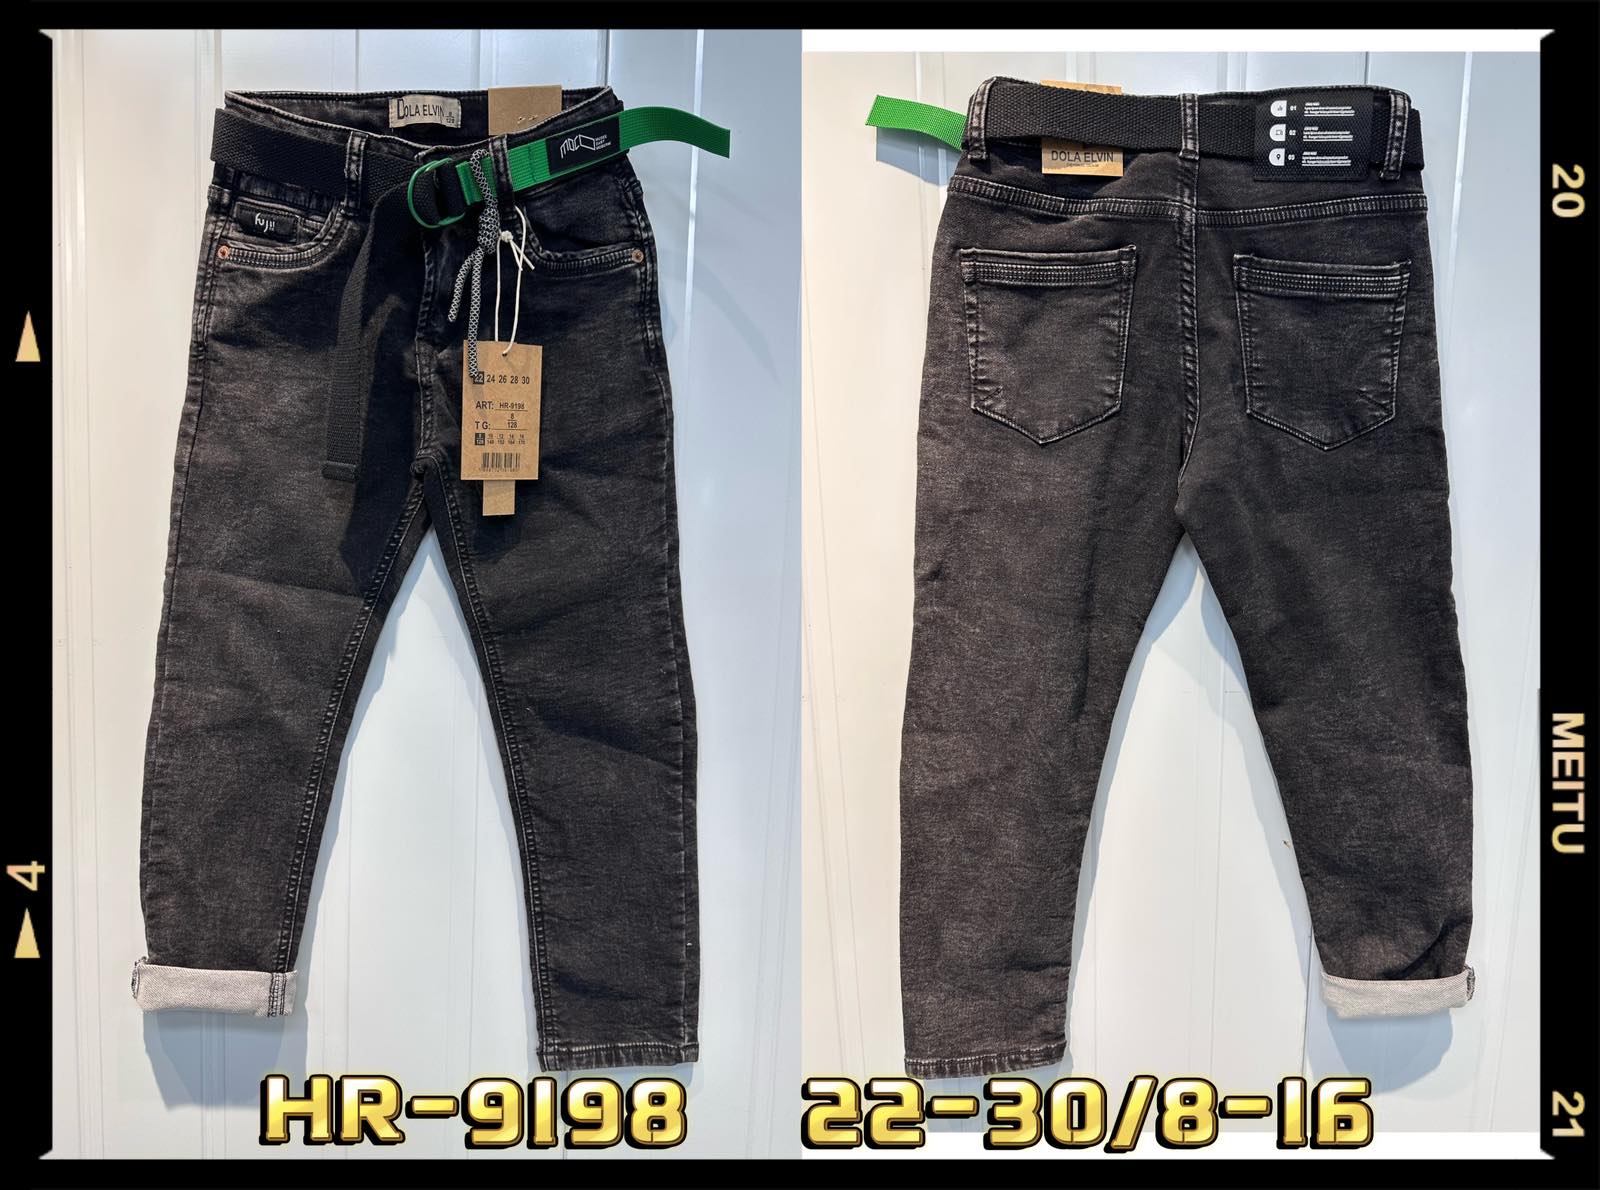 Spodnie  jeansowe  chłopięca Roz 22-30/8-16, 1 kolor Paczka 10 szt